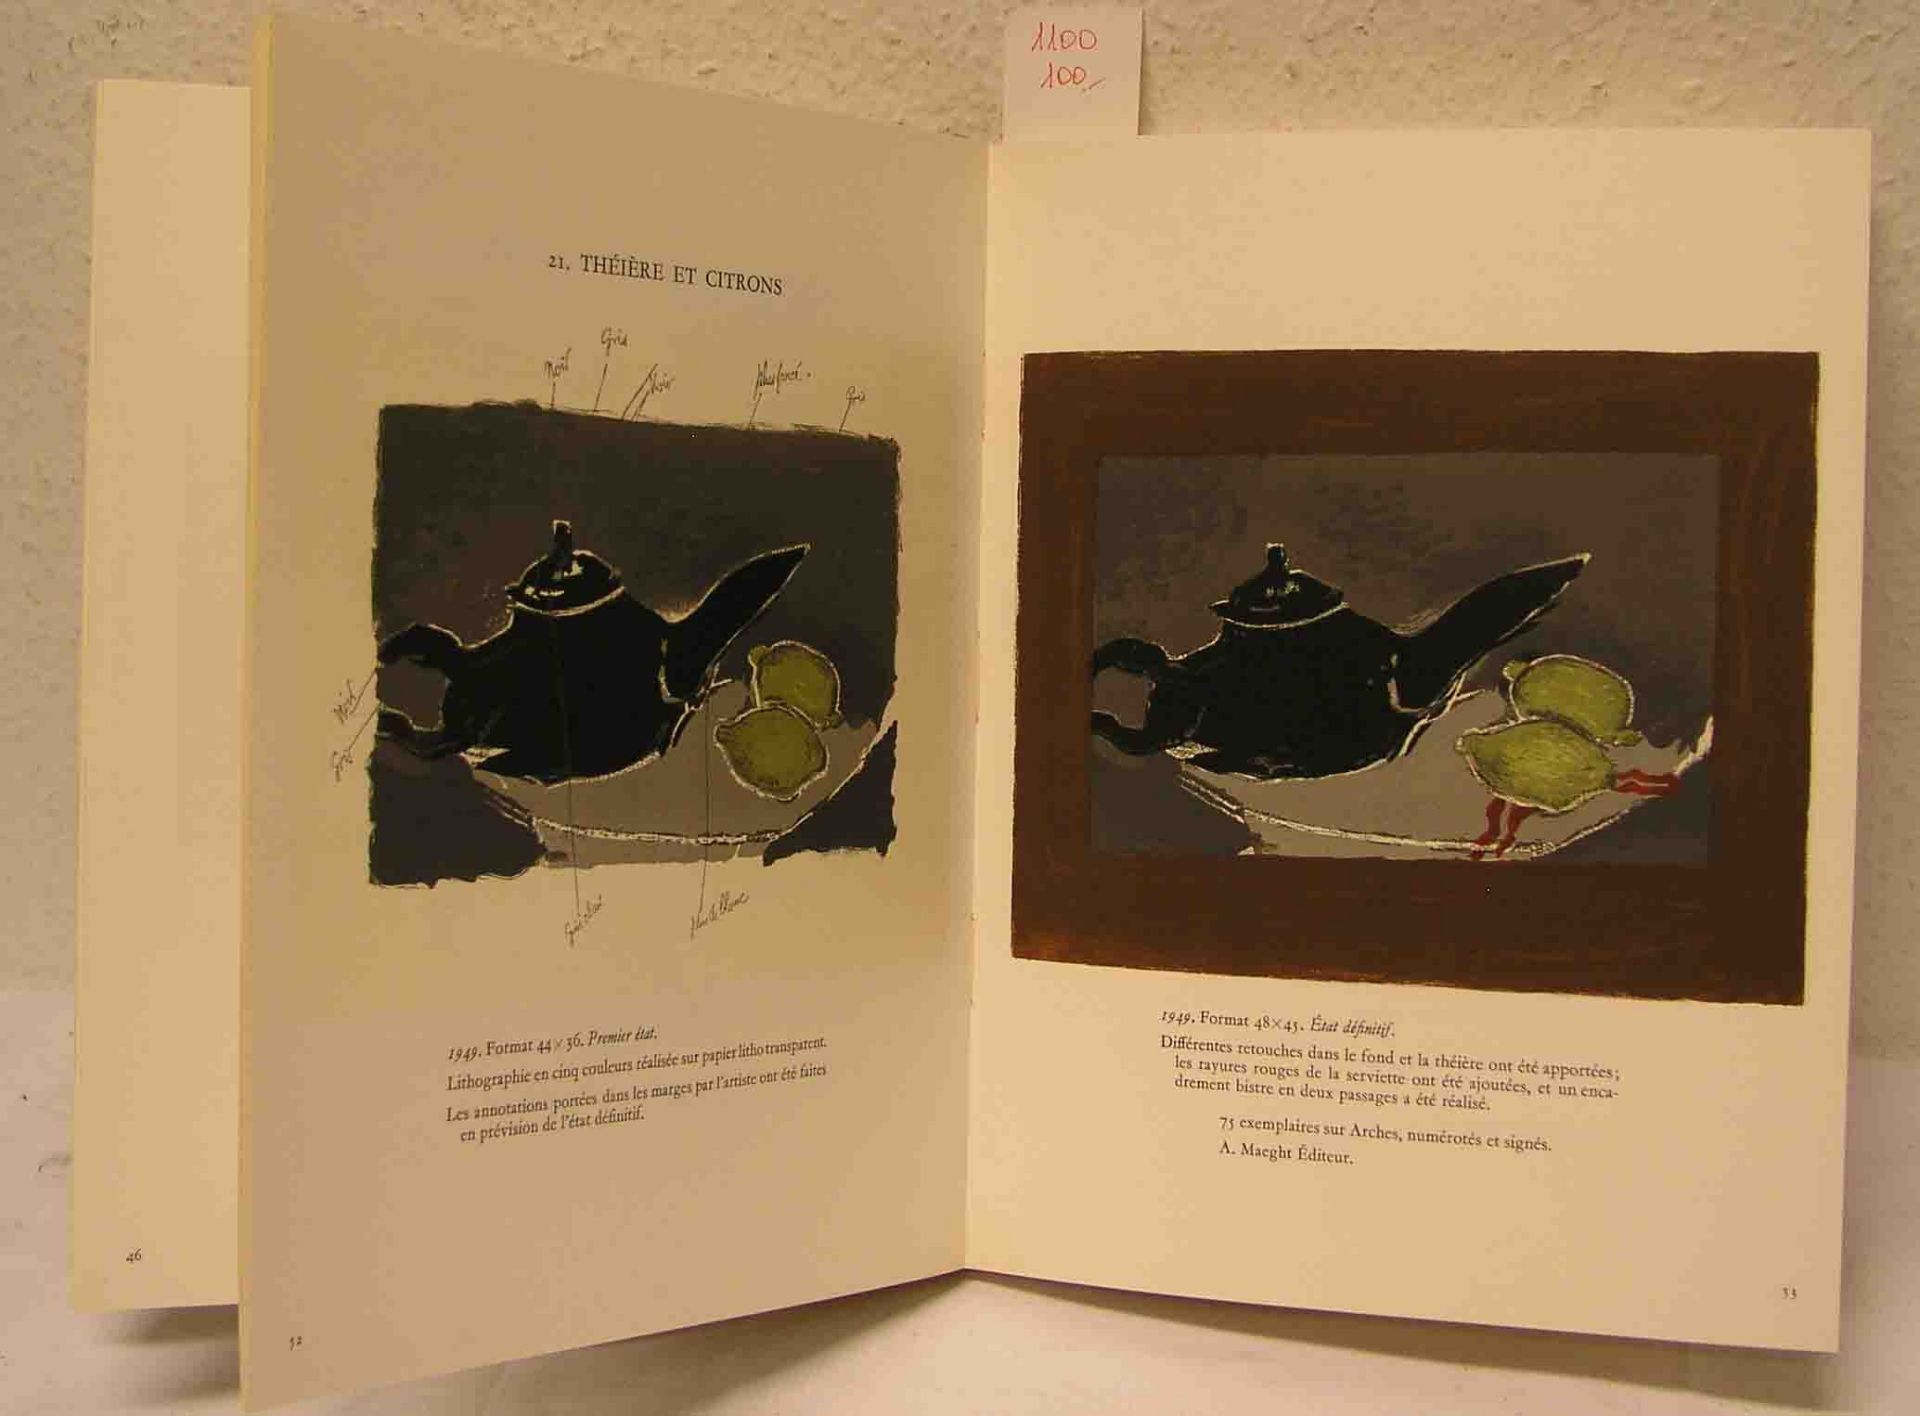 Brague-Mourlot, Fernand Braque, Lithographe: "Preface de Francis Ponge". Monte Carlo 1963.